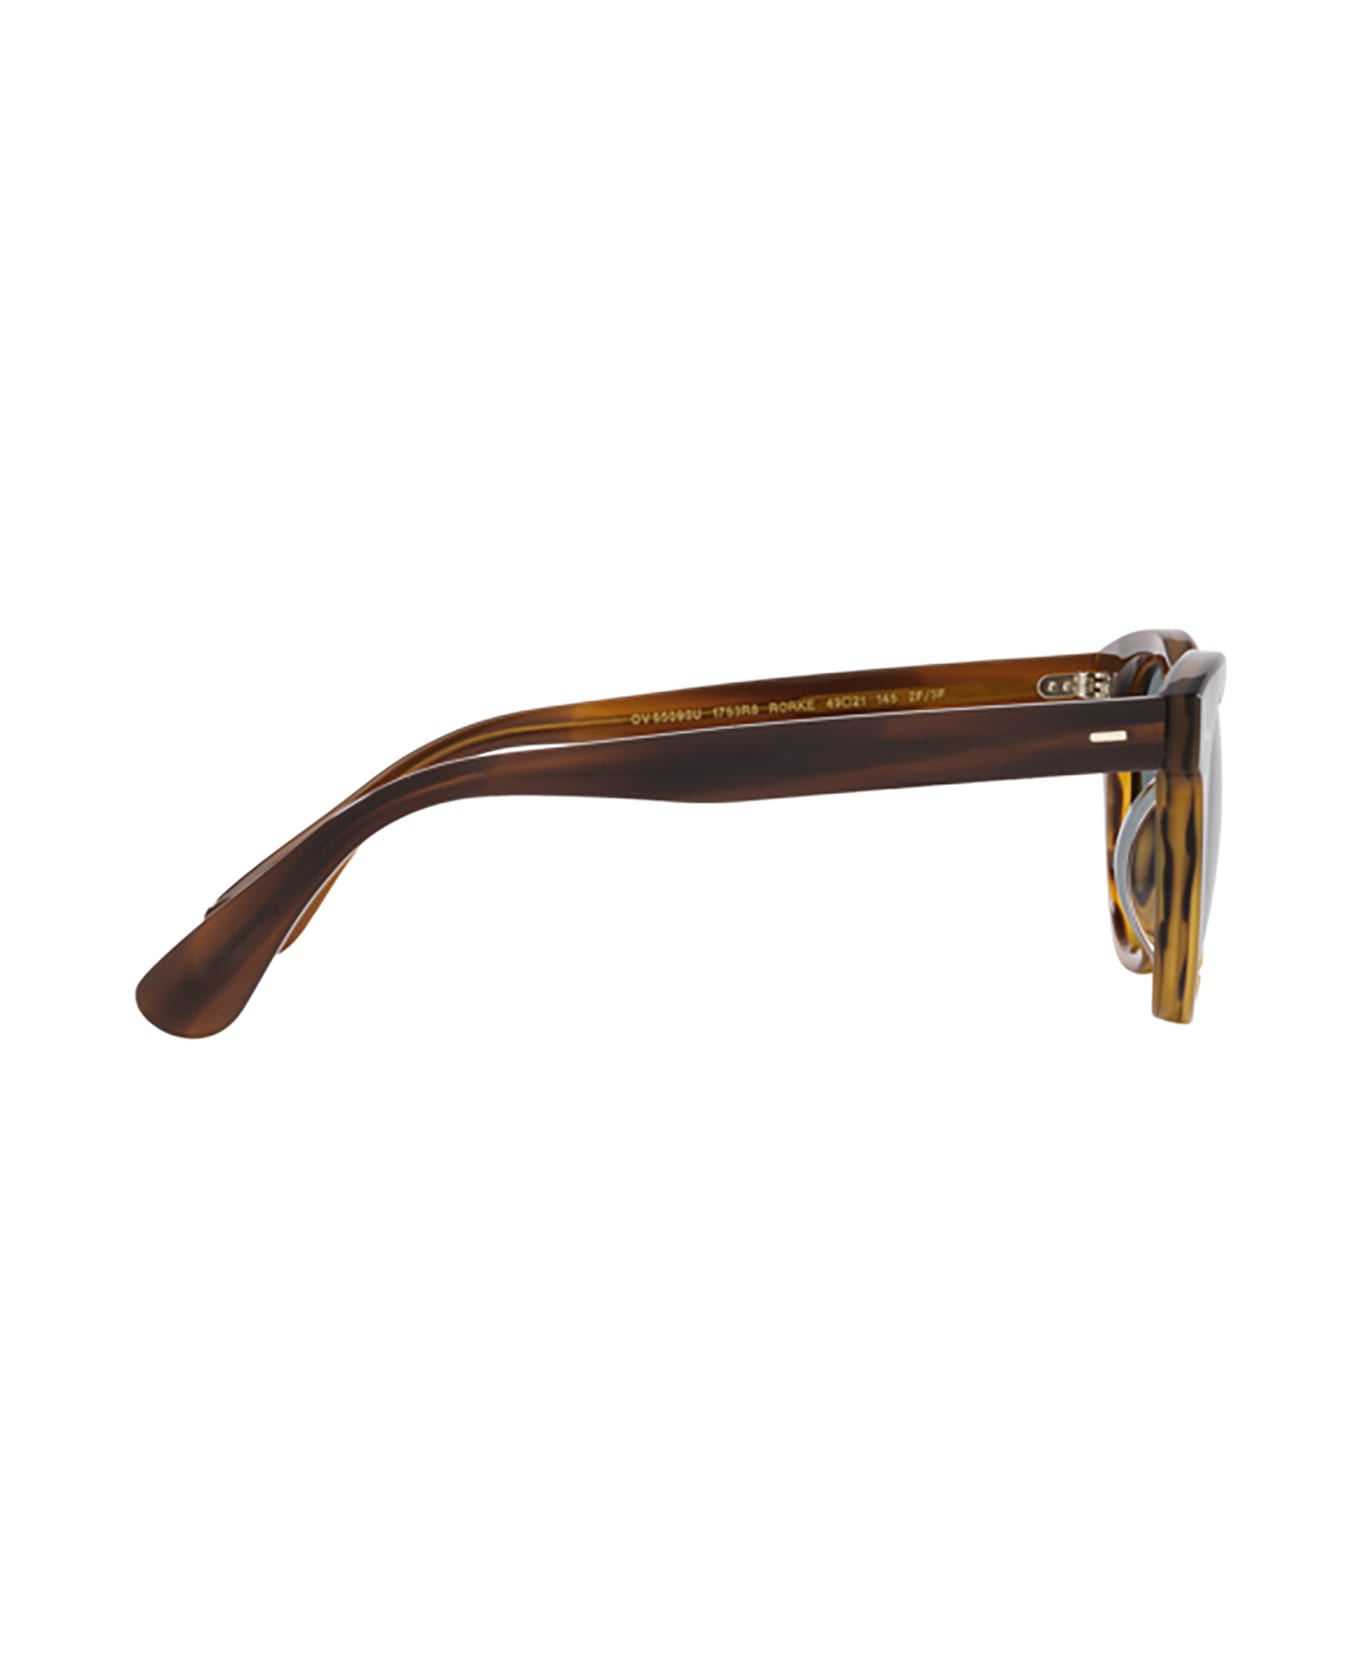 Oliver Peoples Ov5509su Sycamore Sunglasses - Sycamore